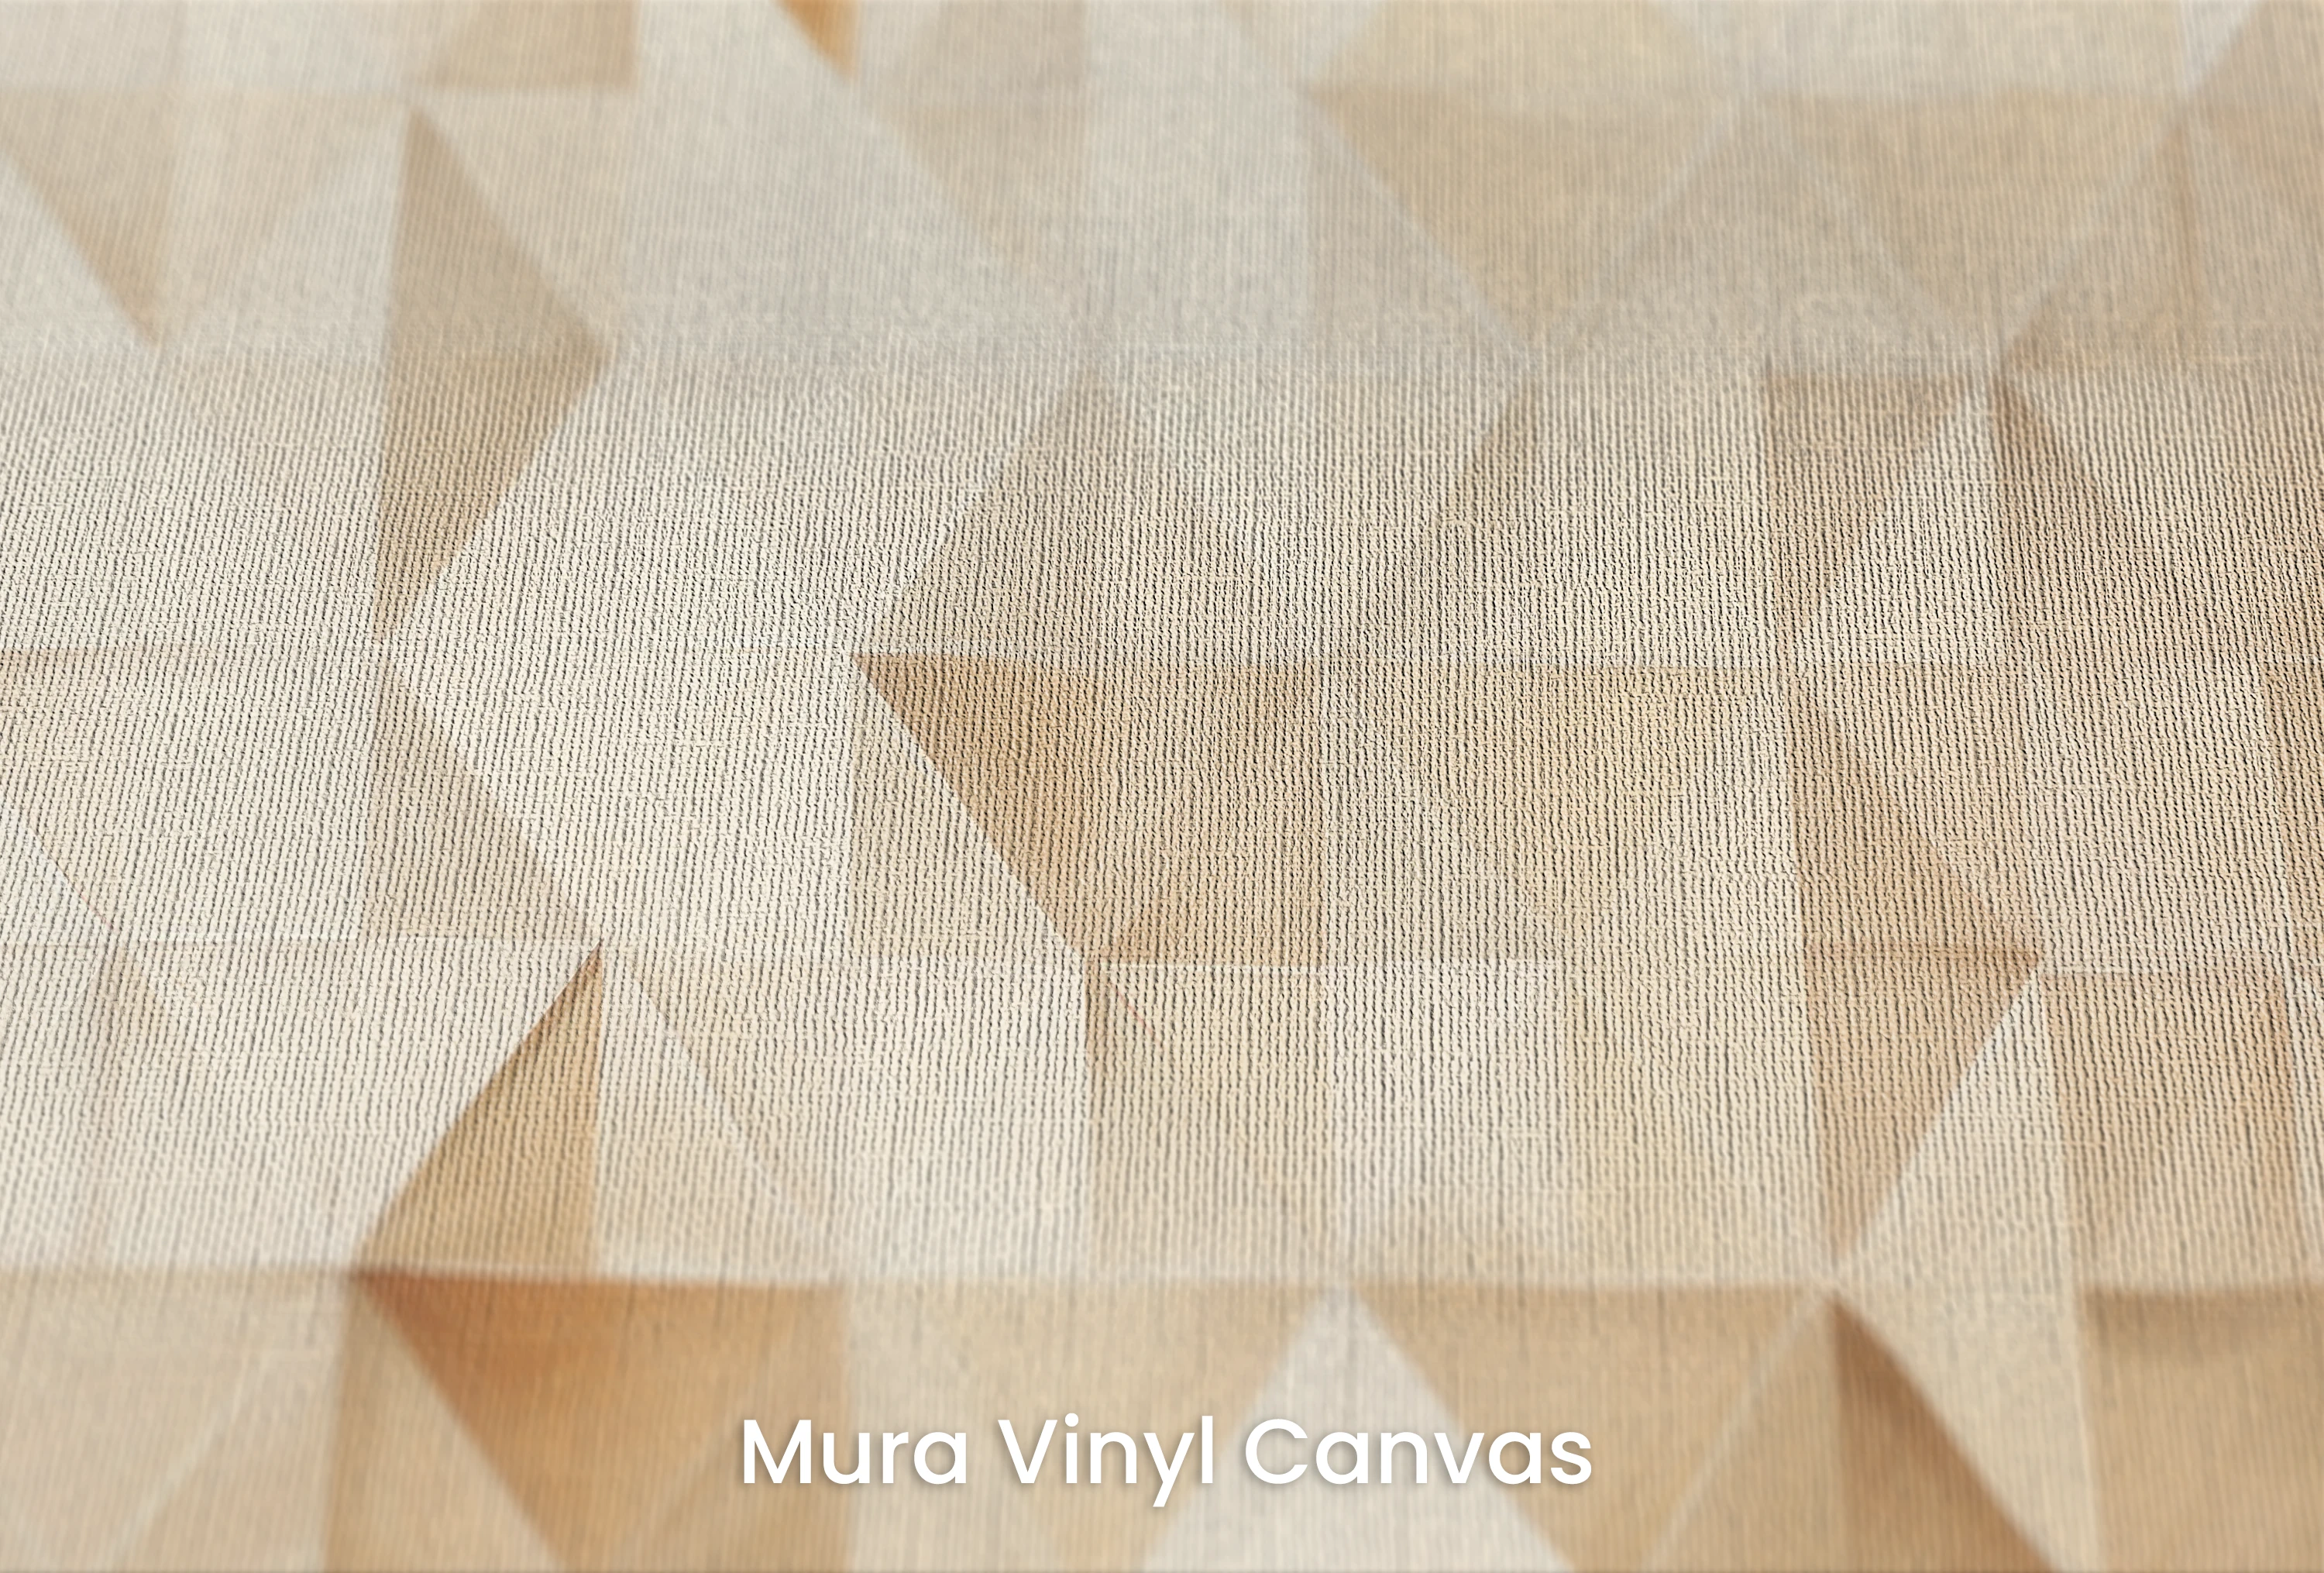 Mura Vinyl Canvas – Tapete mit natürlicher Leinwandstruktur